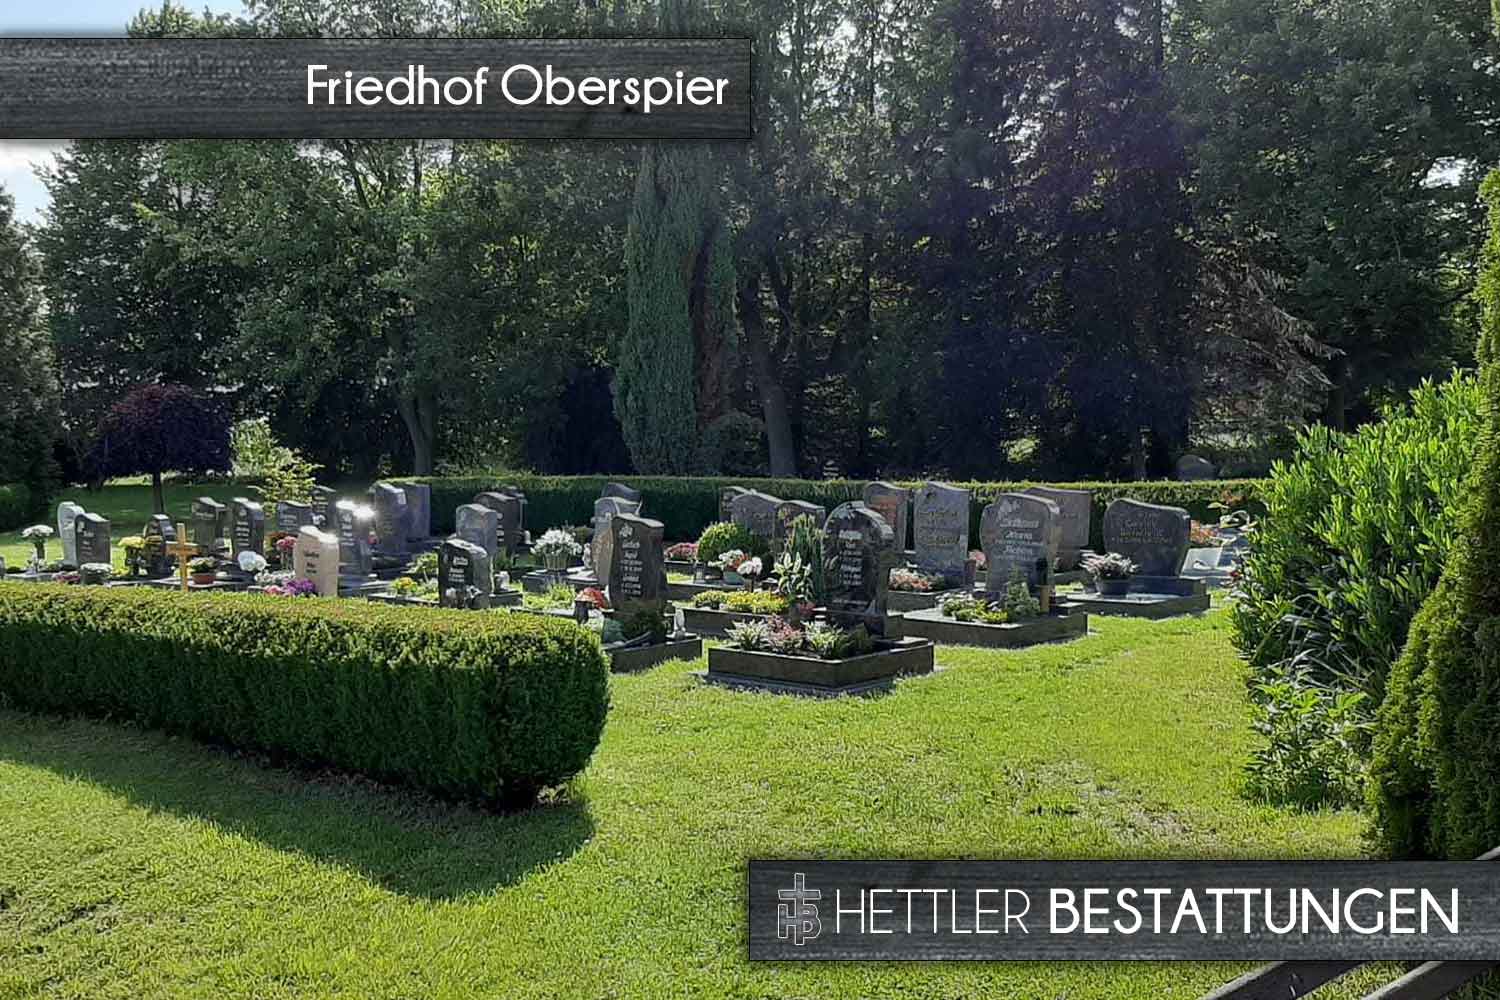 Friedhof in Oberspier. Ihr Ort des Abschieds mit Hettler Bestattungen.